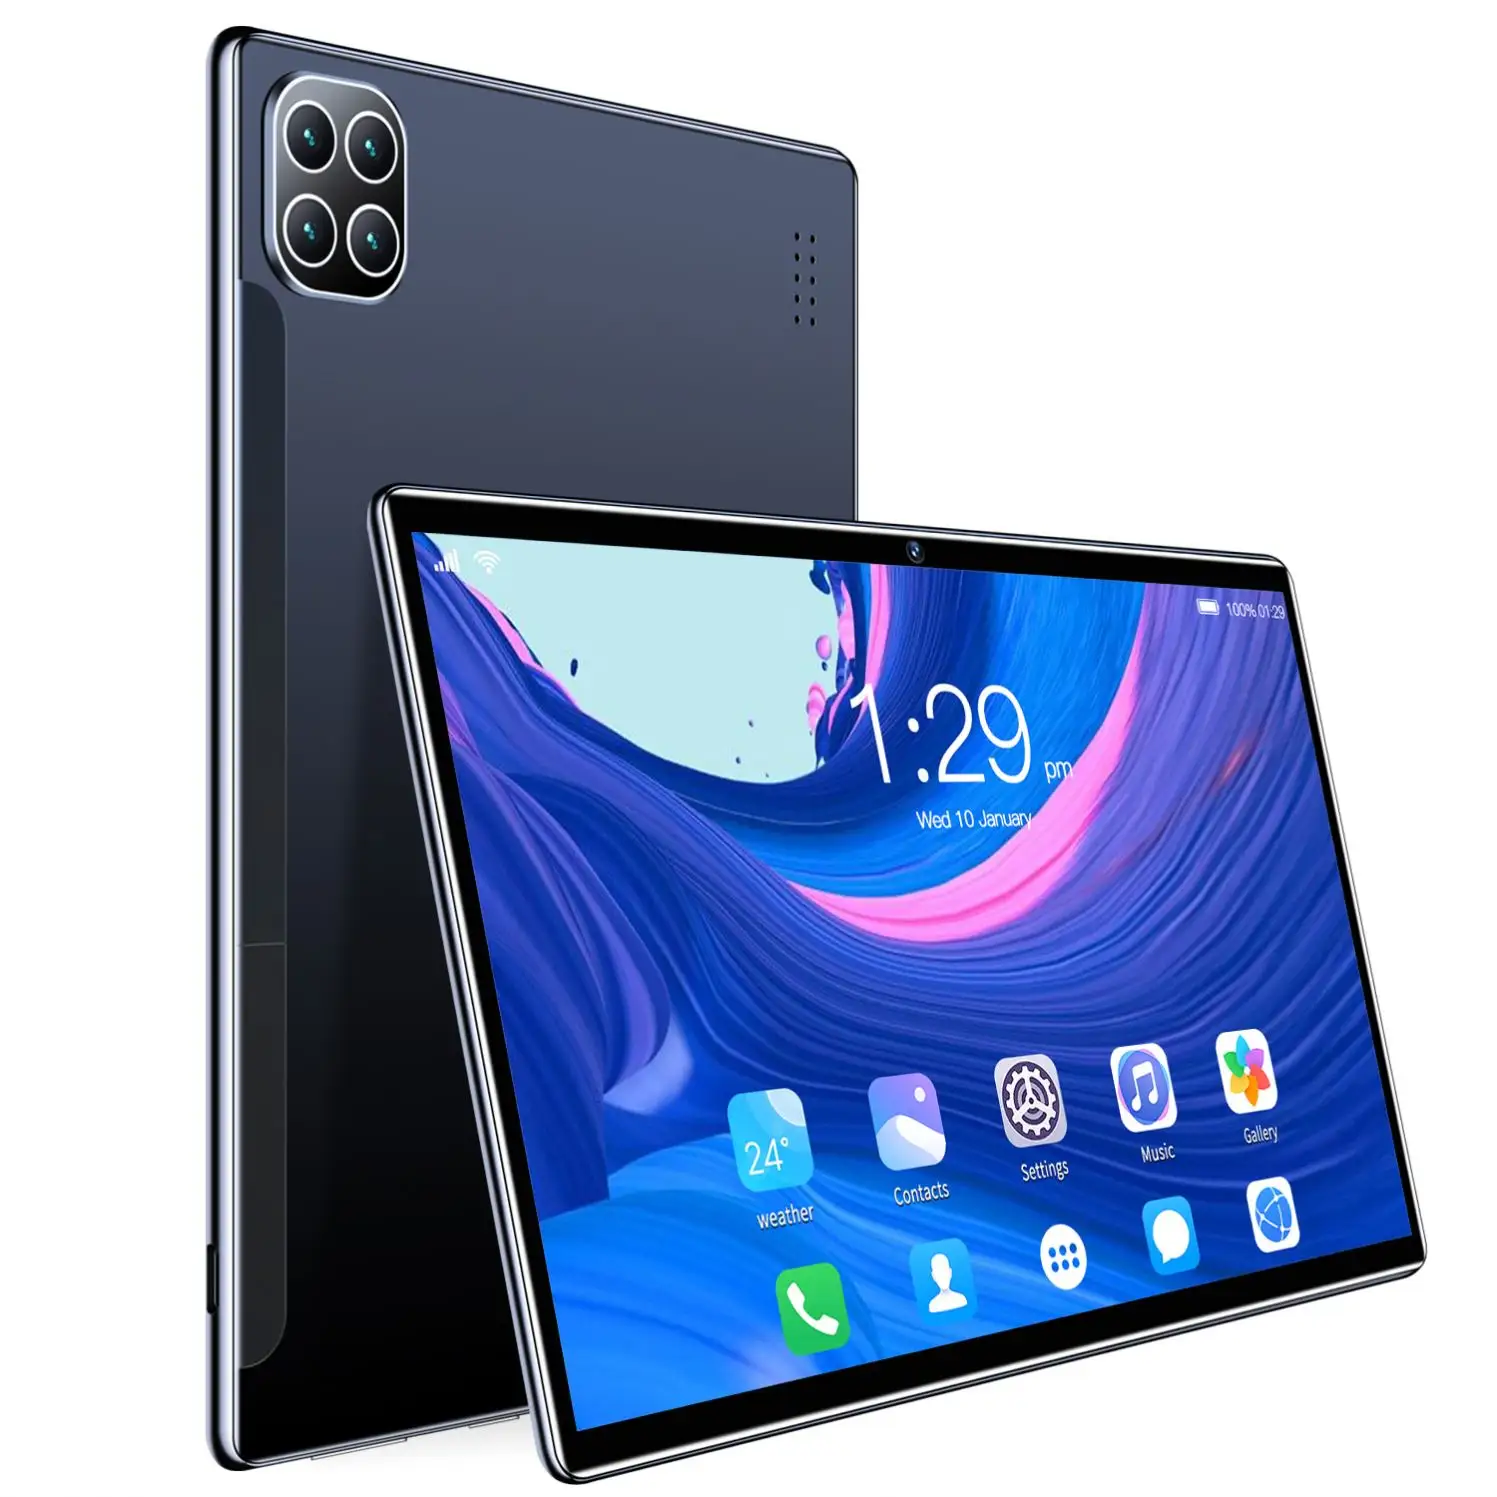 10 인치 oem 안드로이드 태블릿 pc 4G lte 안드로이드 저렴한 태블릿 pc 키보드 케이스